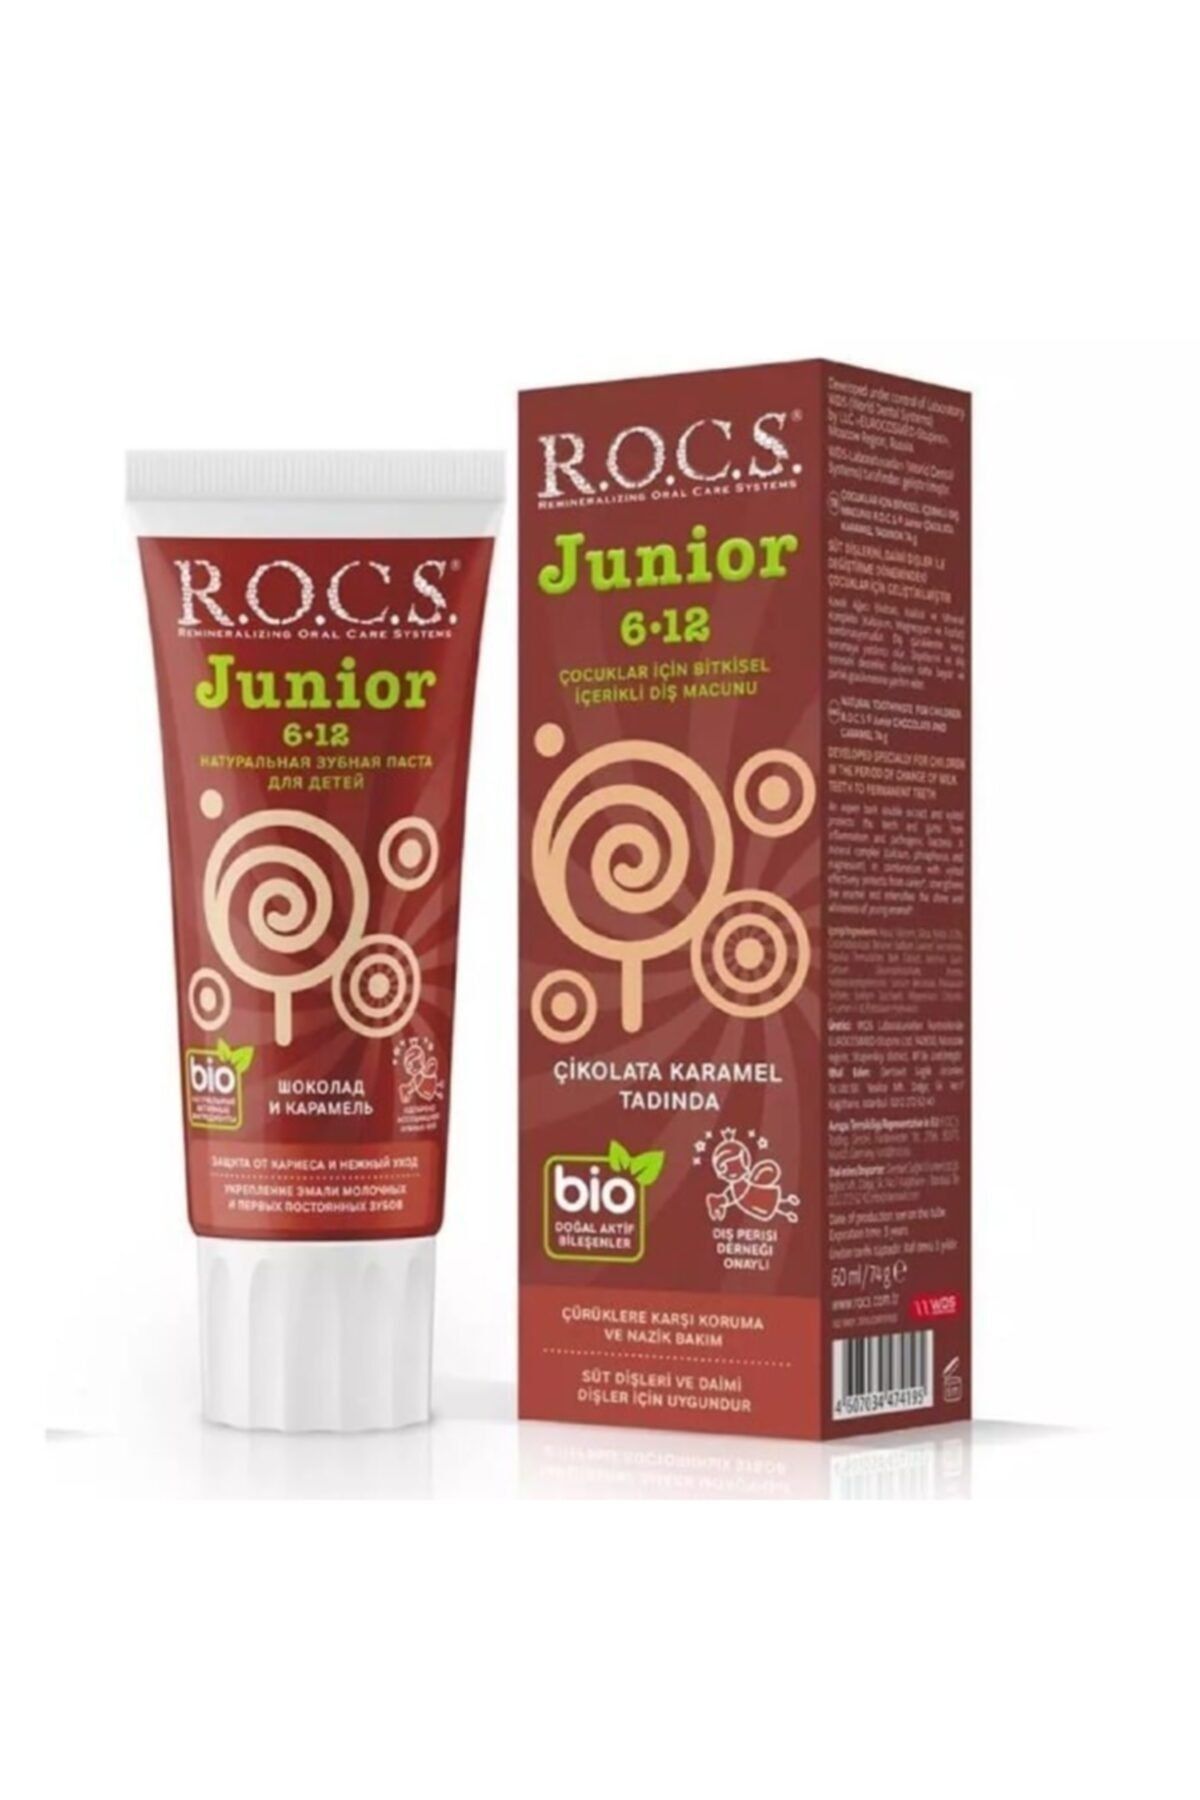 R.O.C.S. Rocs Junior 6-12 Yaş Diş Macunu - Çikolata Ve Karamel Tadında (florürsüz) 60 Ml